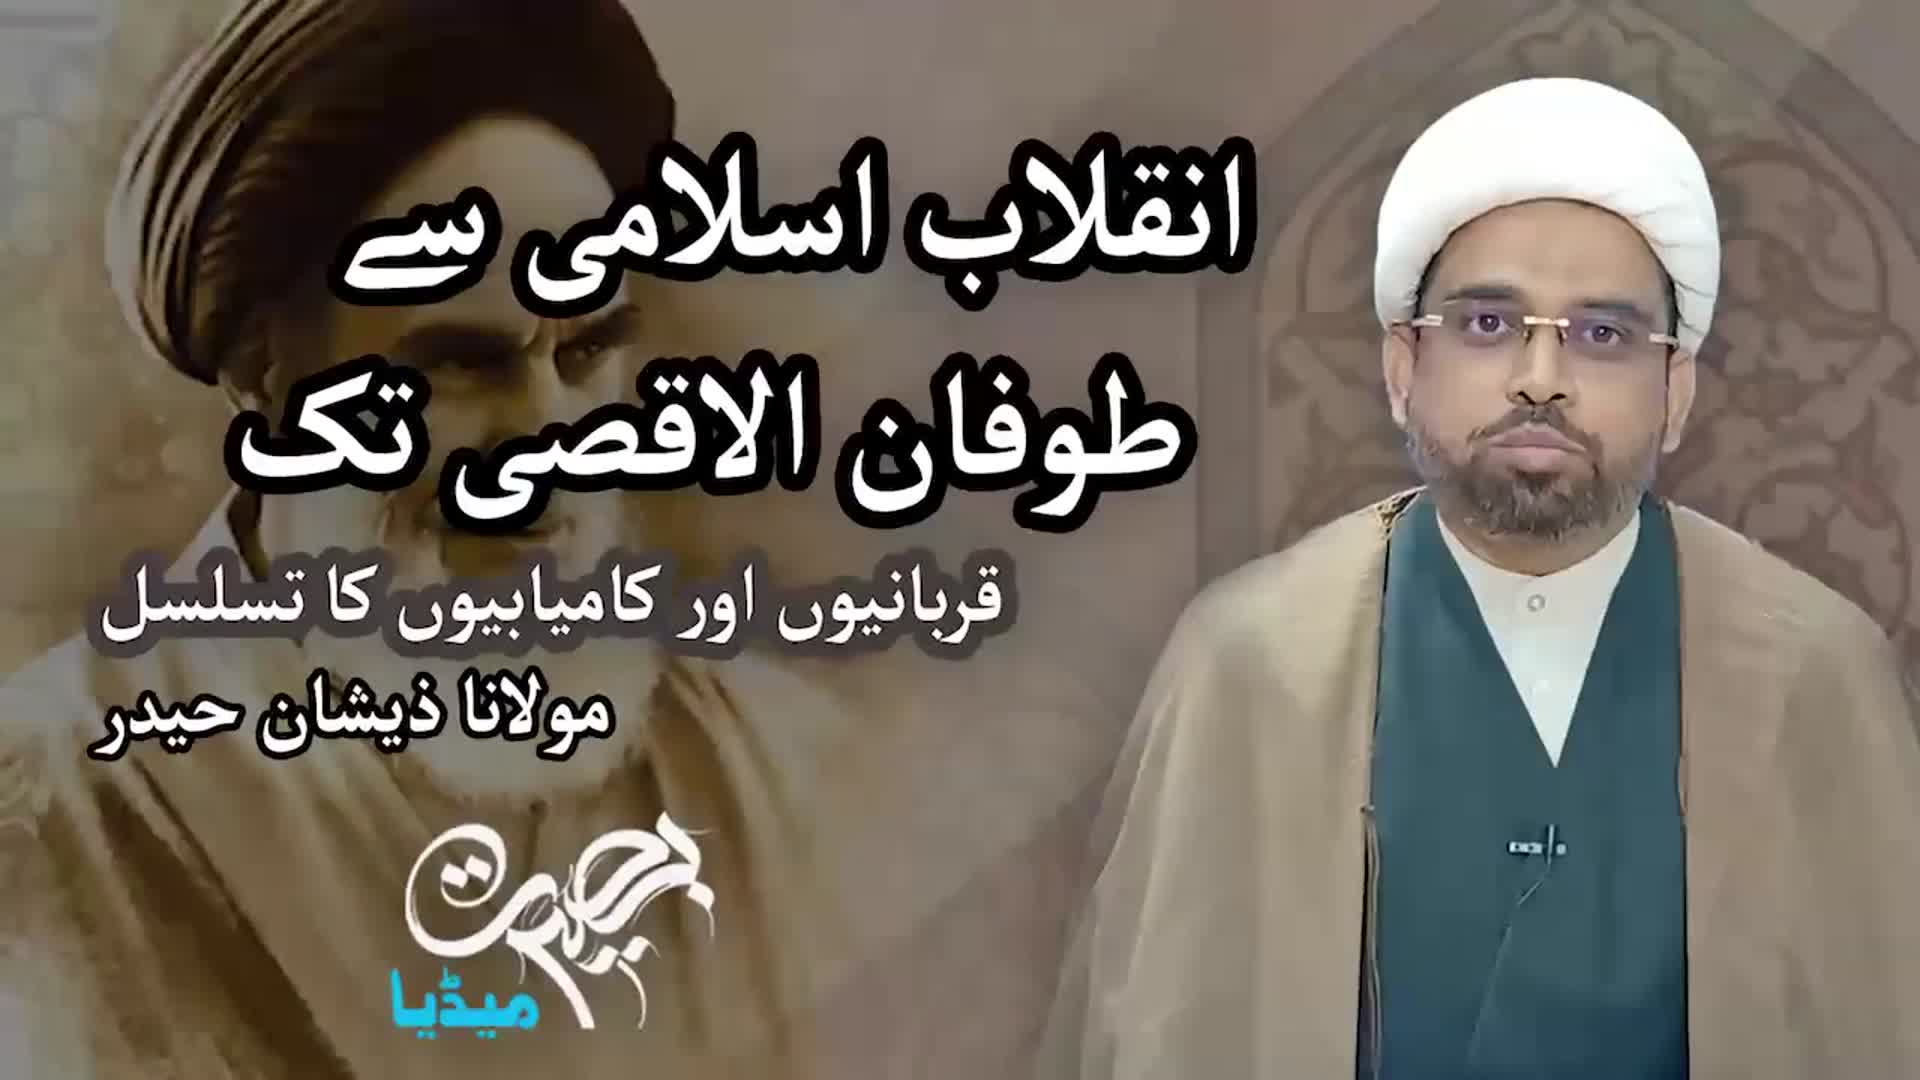 انقلاب اسلامی سے طوفان الاقصی تک قربانیوں اور کامیابیوں  کا تسلسل | مولانا ذیشان حیدر | Urdu